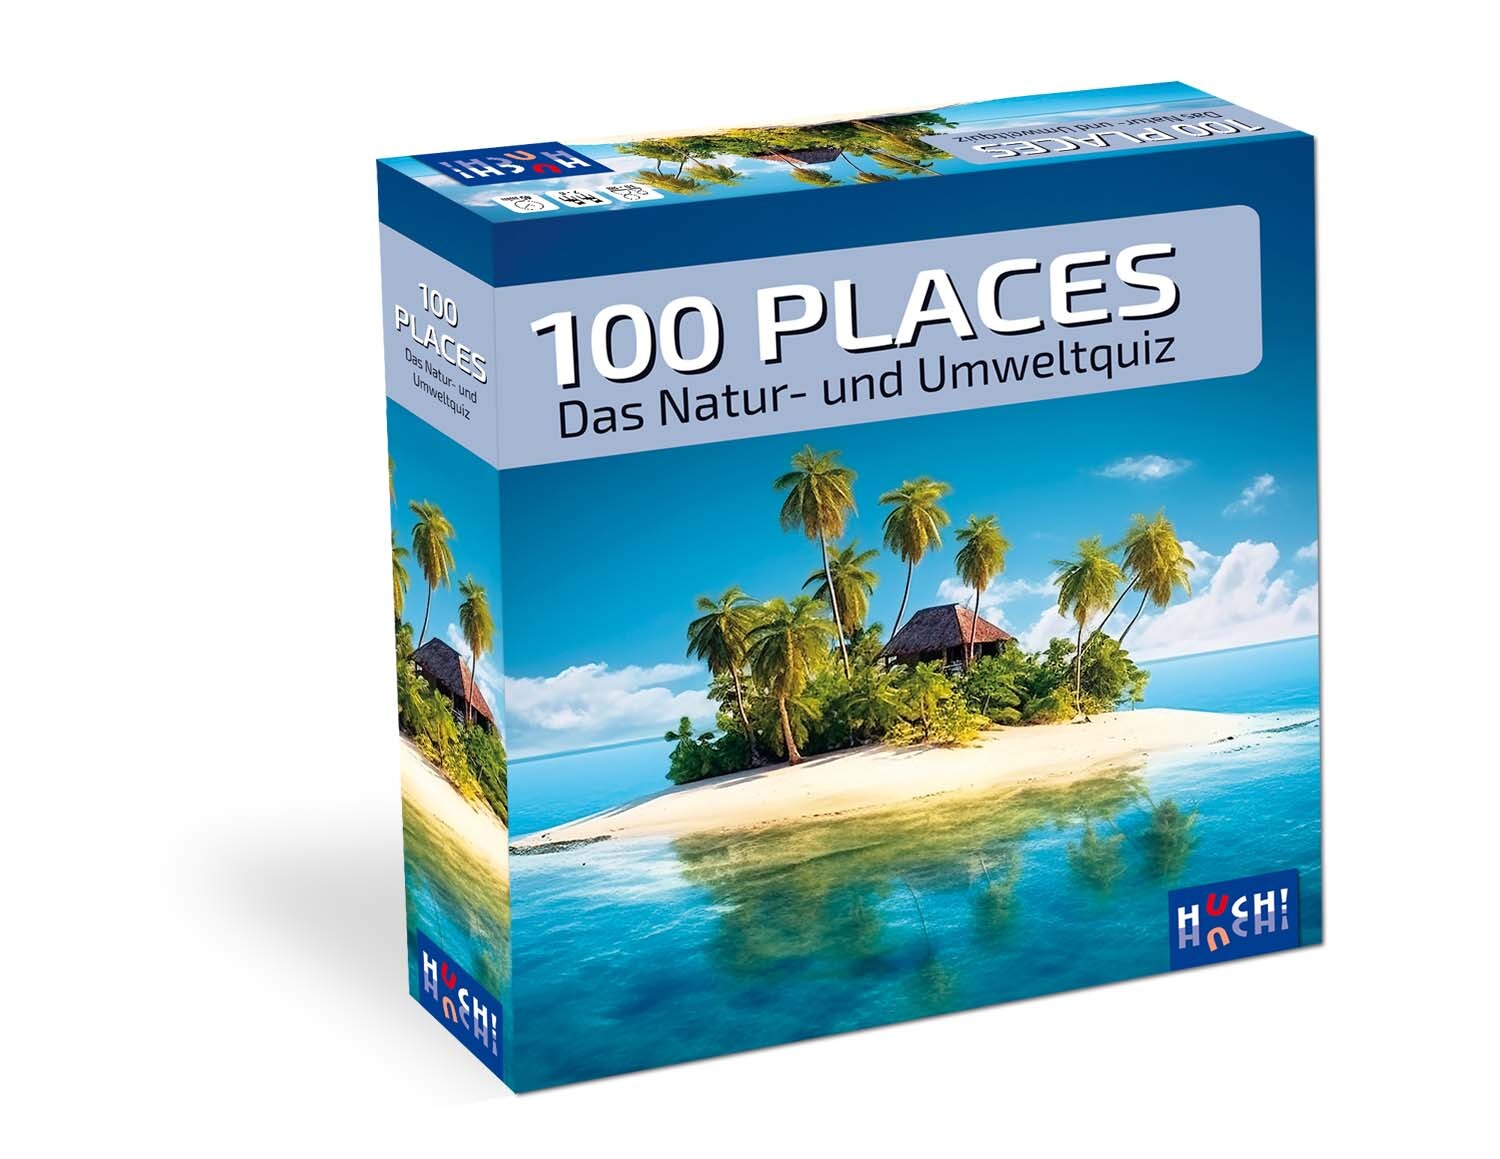 100 places von HUCH!